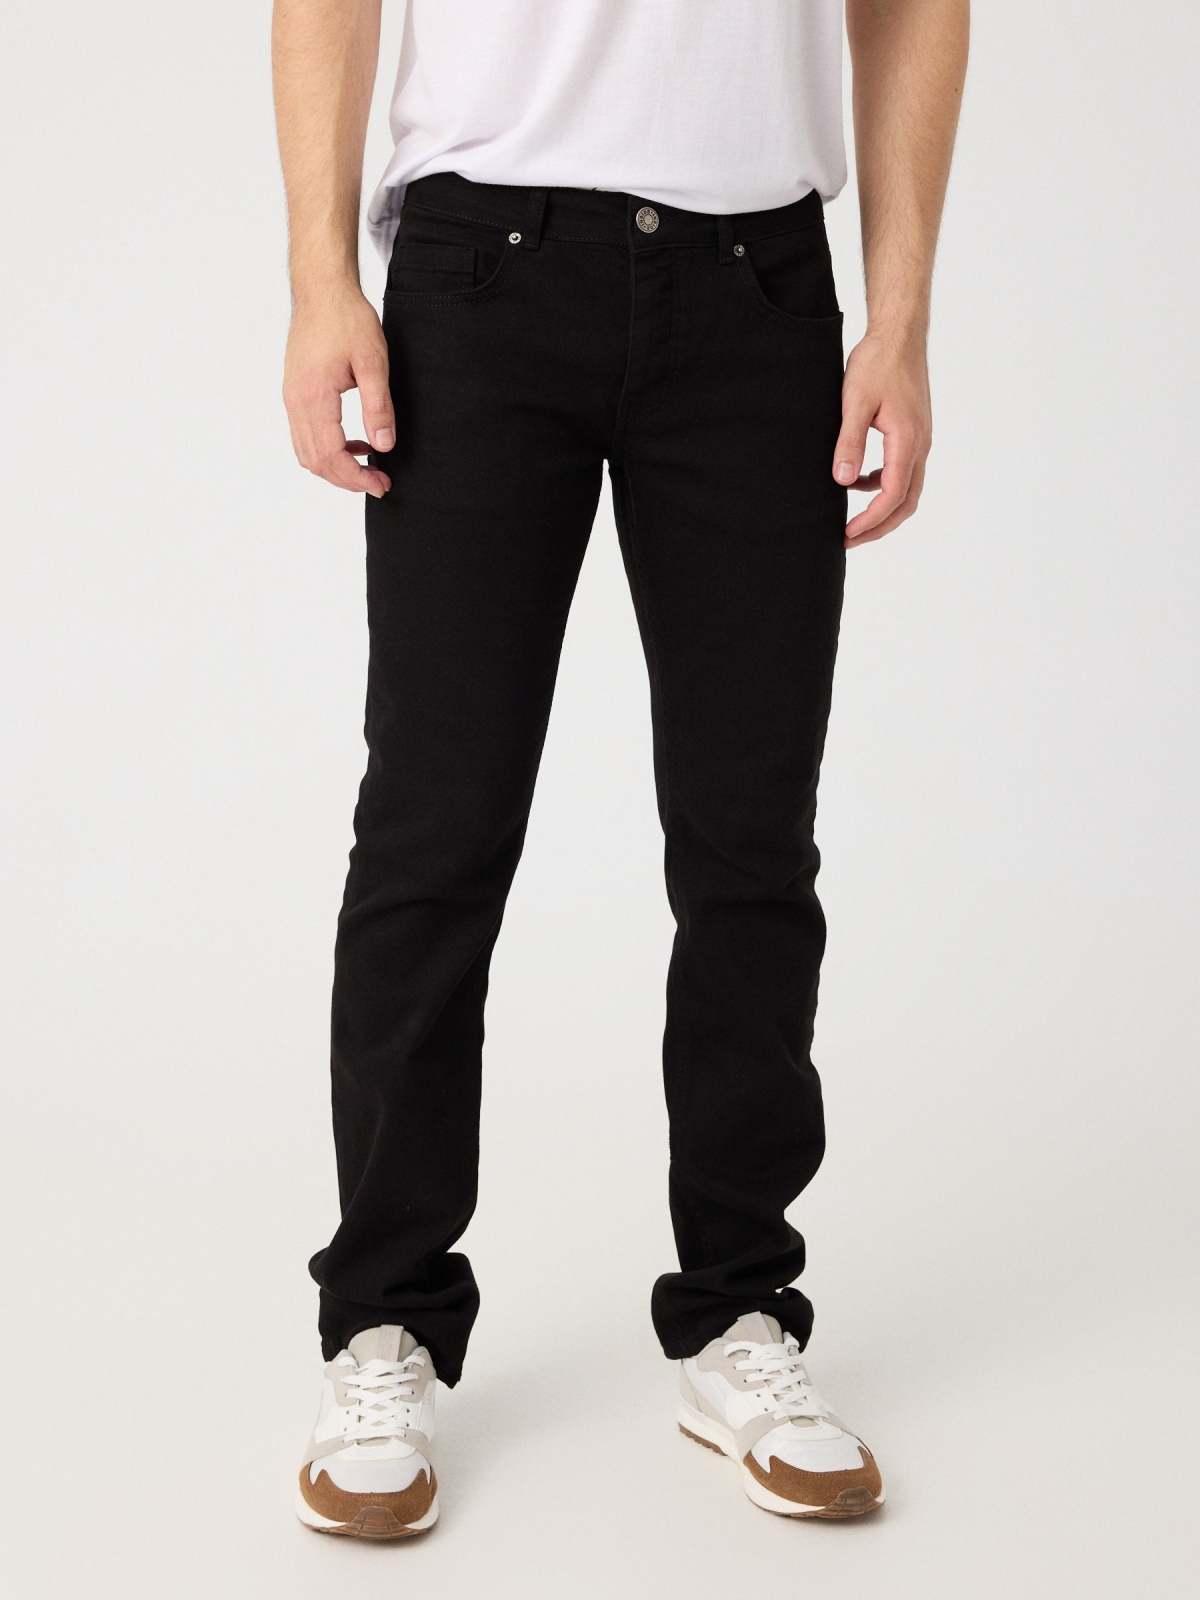 Pantalón regular cinco bolsillos negro vista media frontal